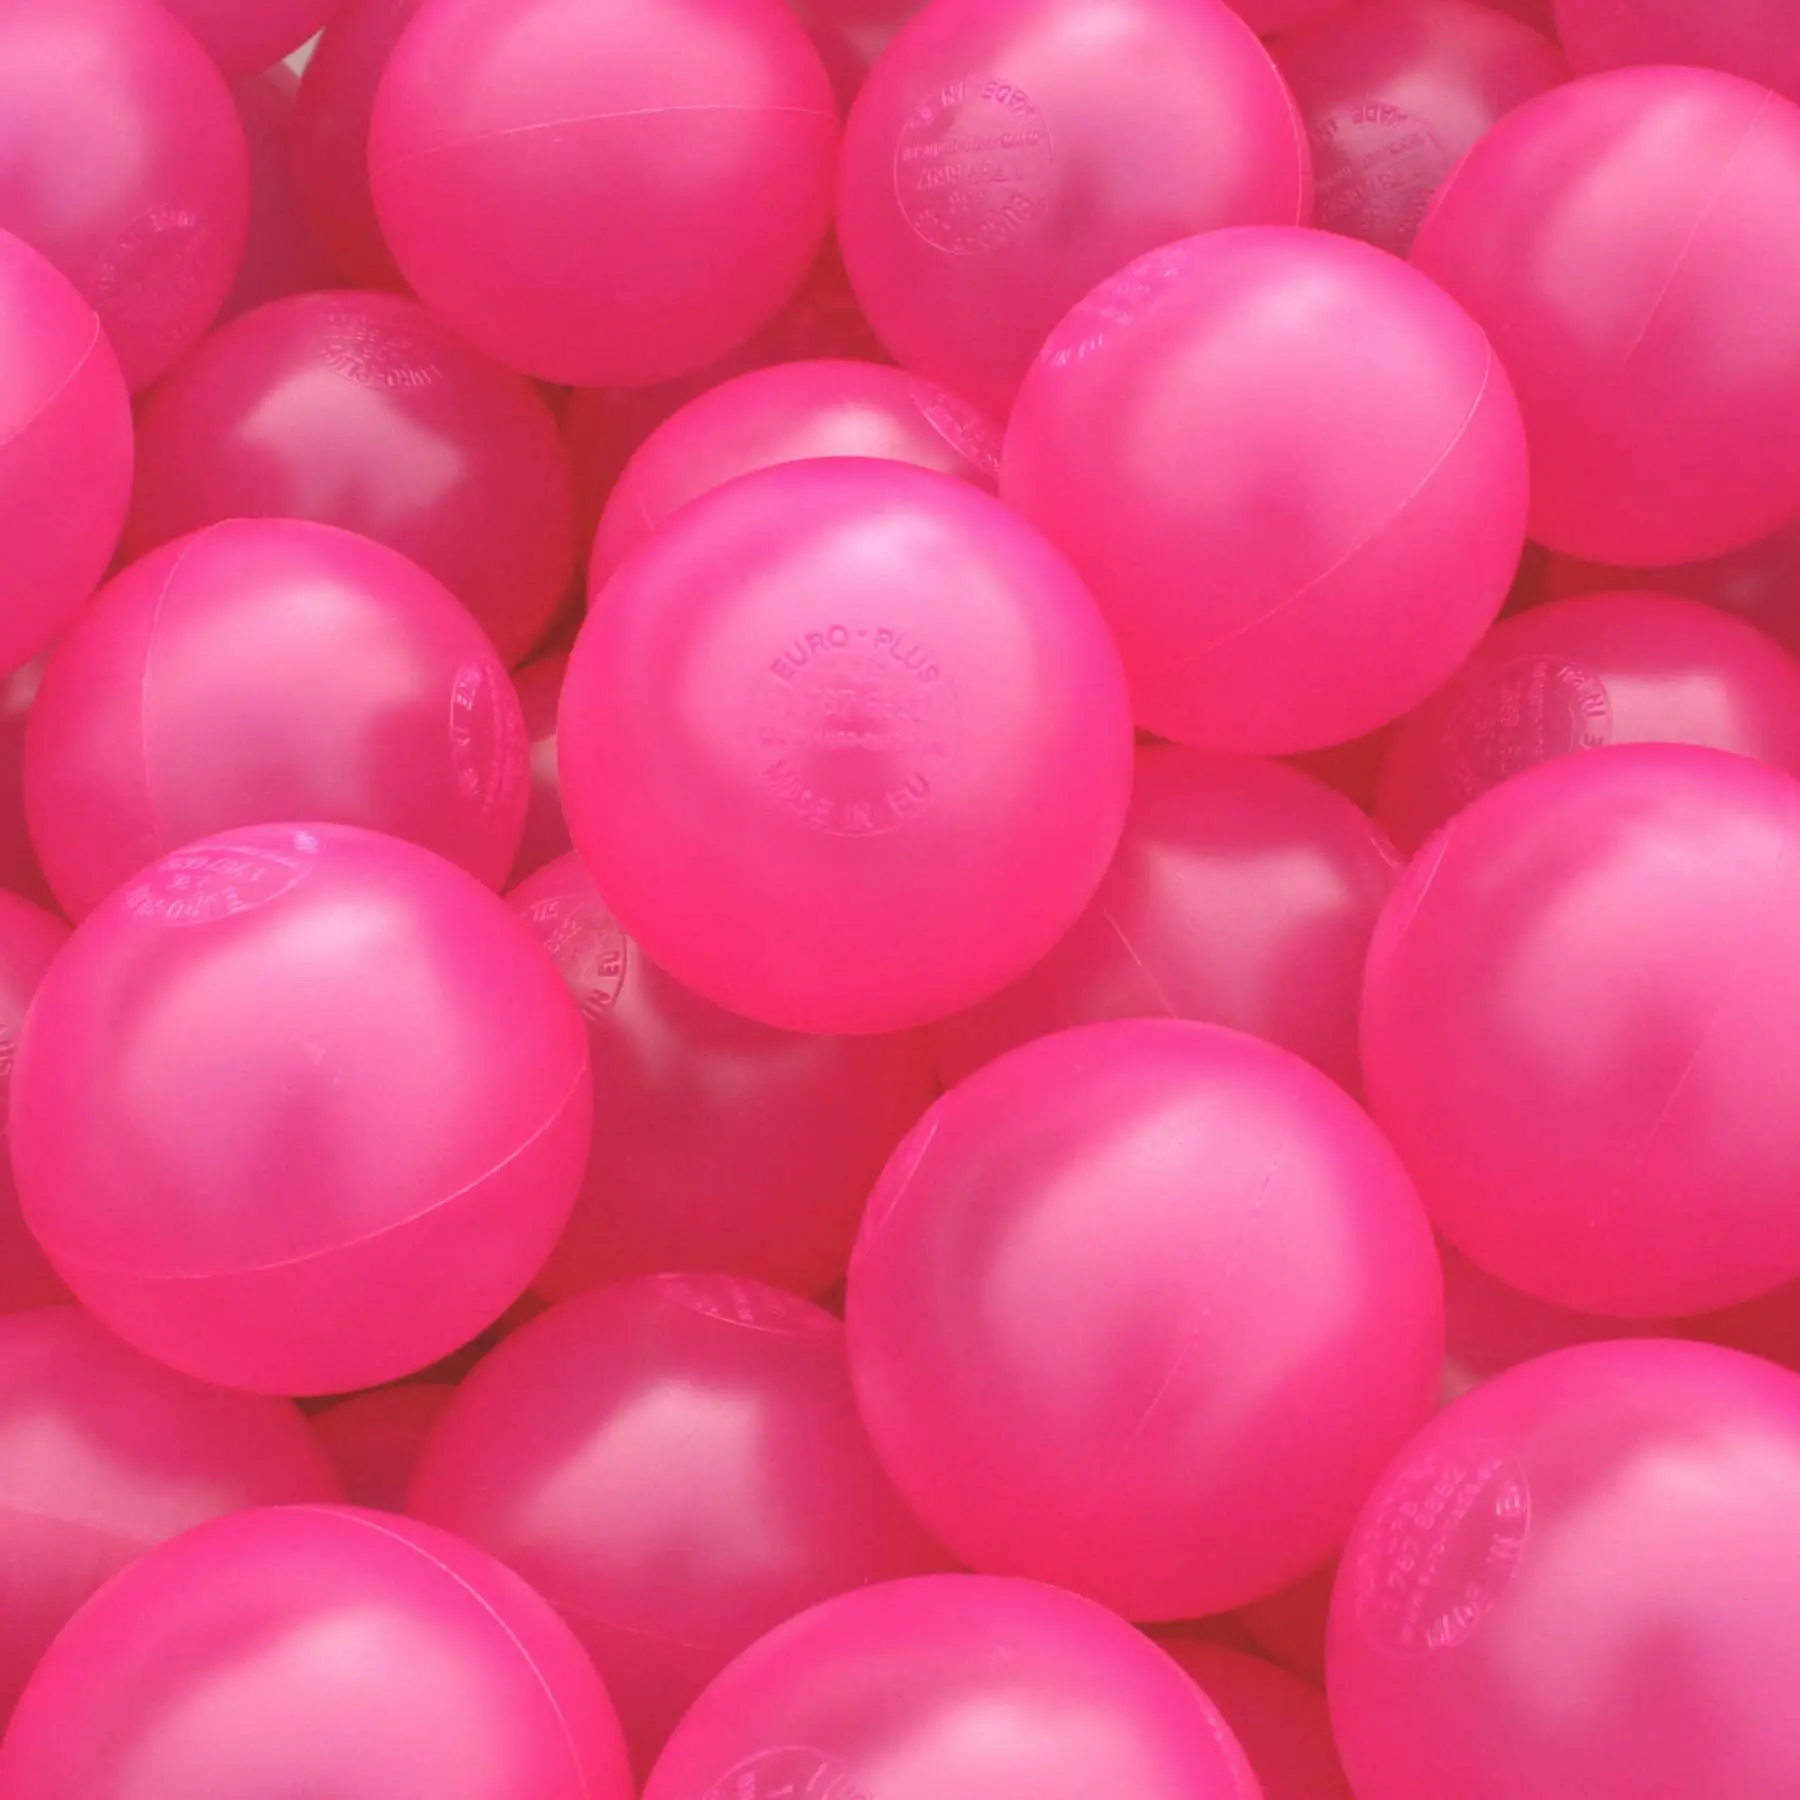 80mm 75mm बच्चों महासागर गेंदों के लिए गैर विषैले BPA मुक्त नरम प्लास्टिक गेंदों गेंद गड्ढे खेलने तम्बू लड़कियों के लिए गुलाबी मिश्रण में किए गए यूरोपीय संघ